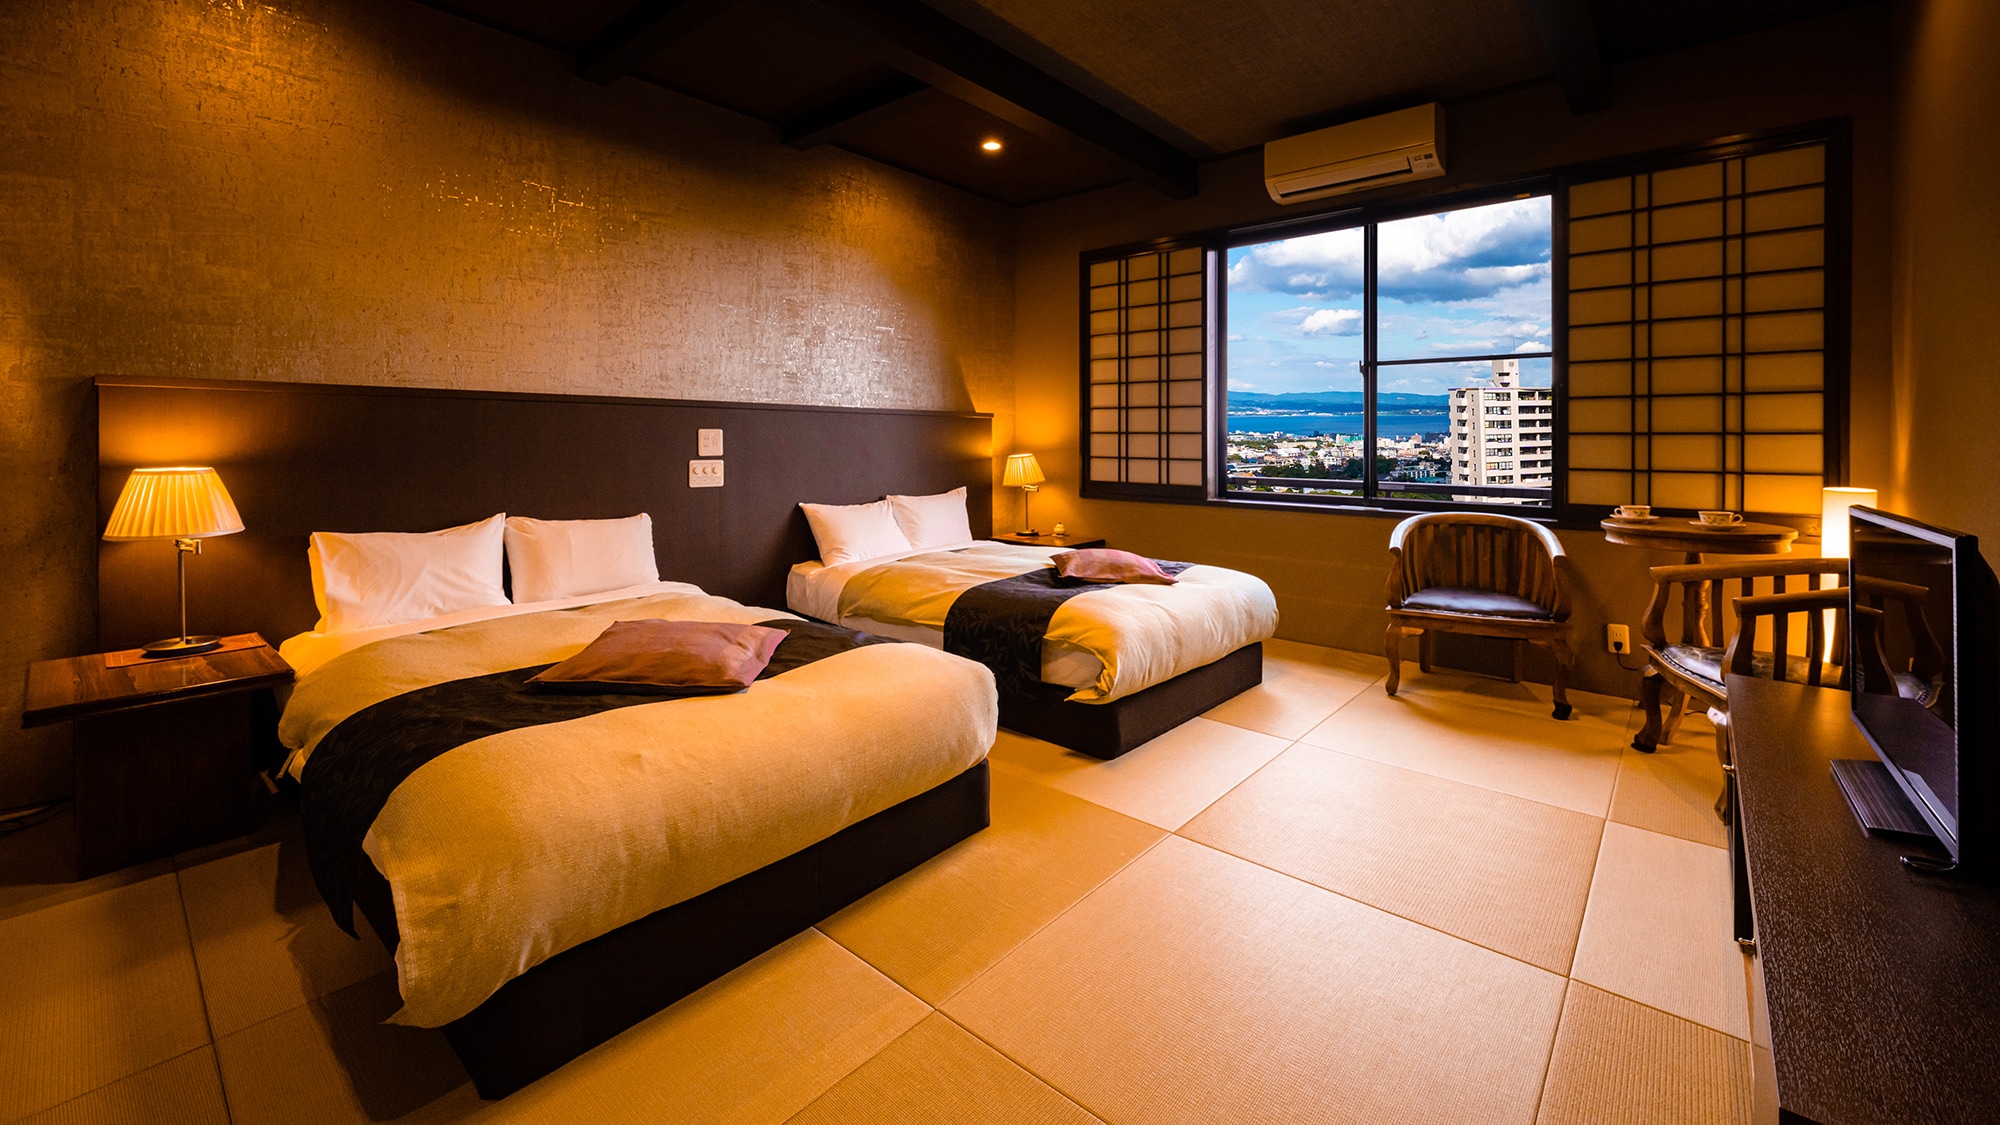 ◆ Oka no Sou ◇ 西式日式房間 ◆ 有兩張床的房間，同時利用日本的味道